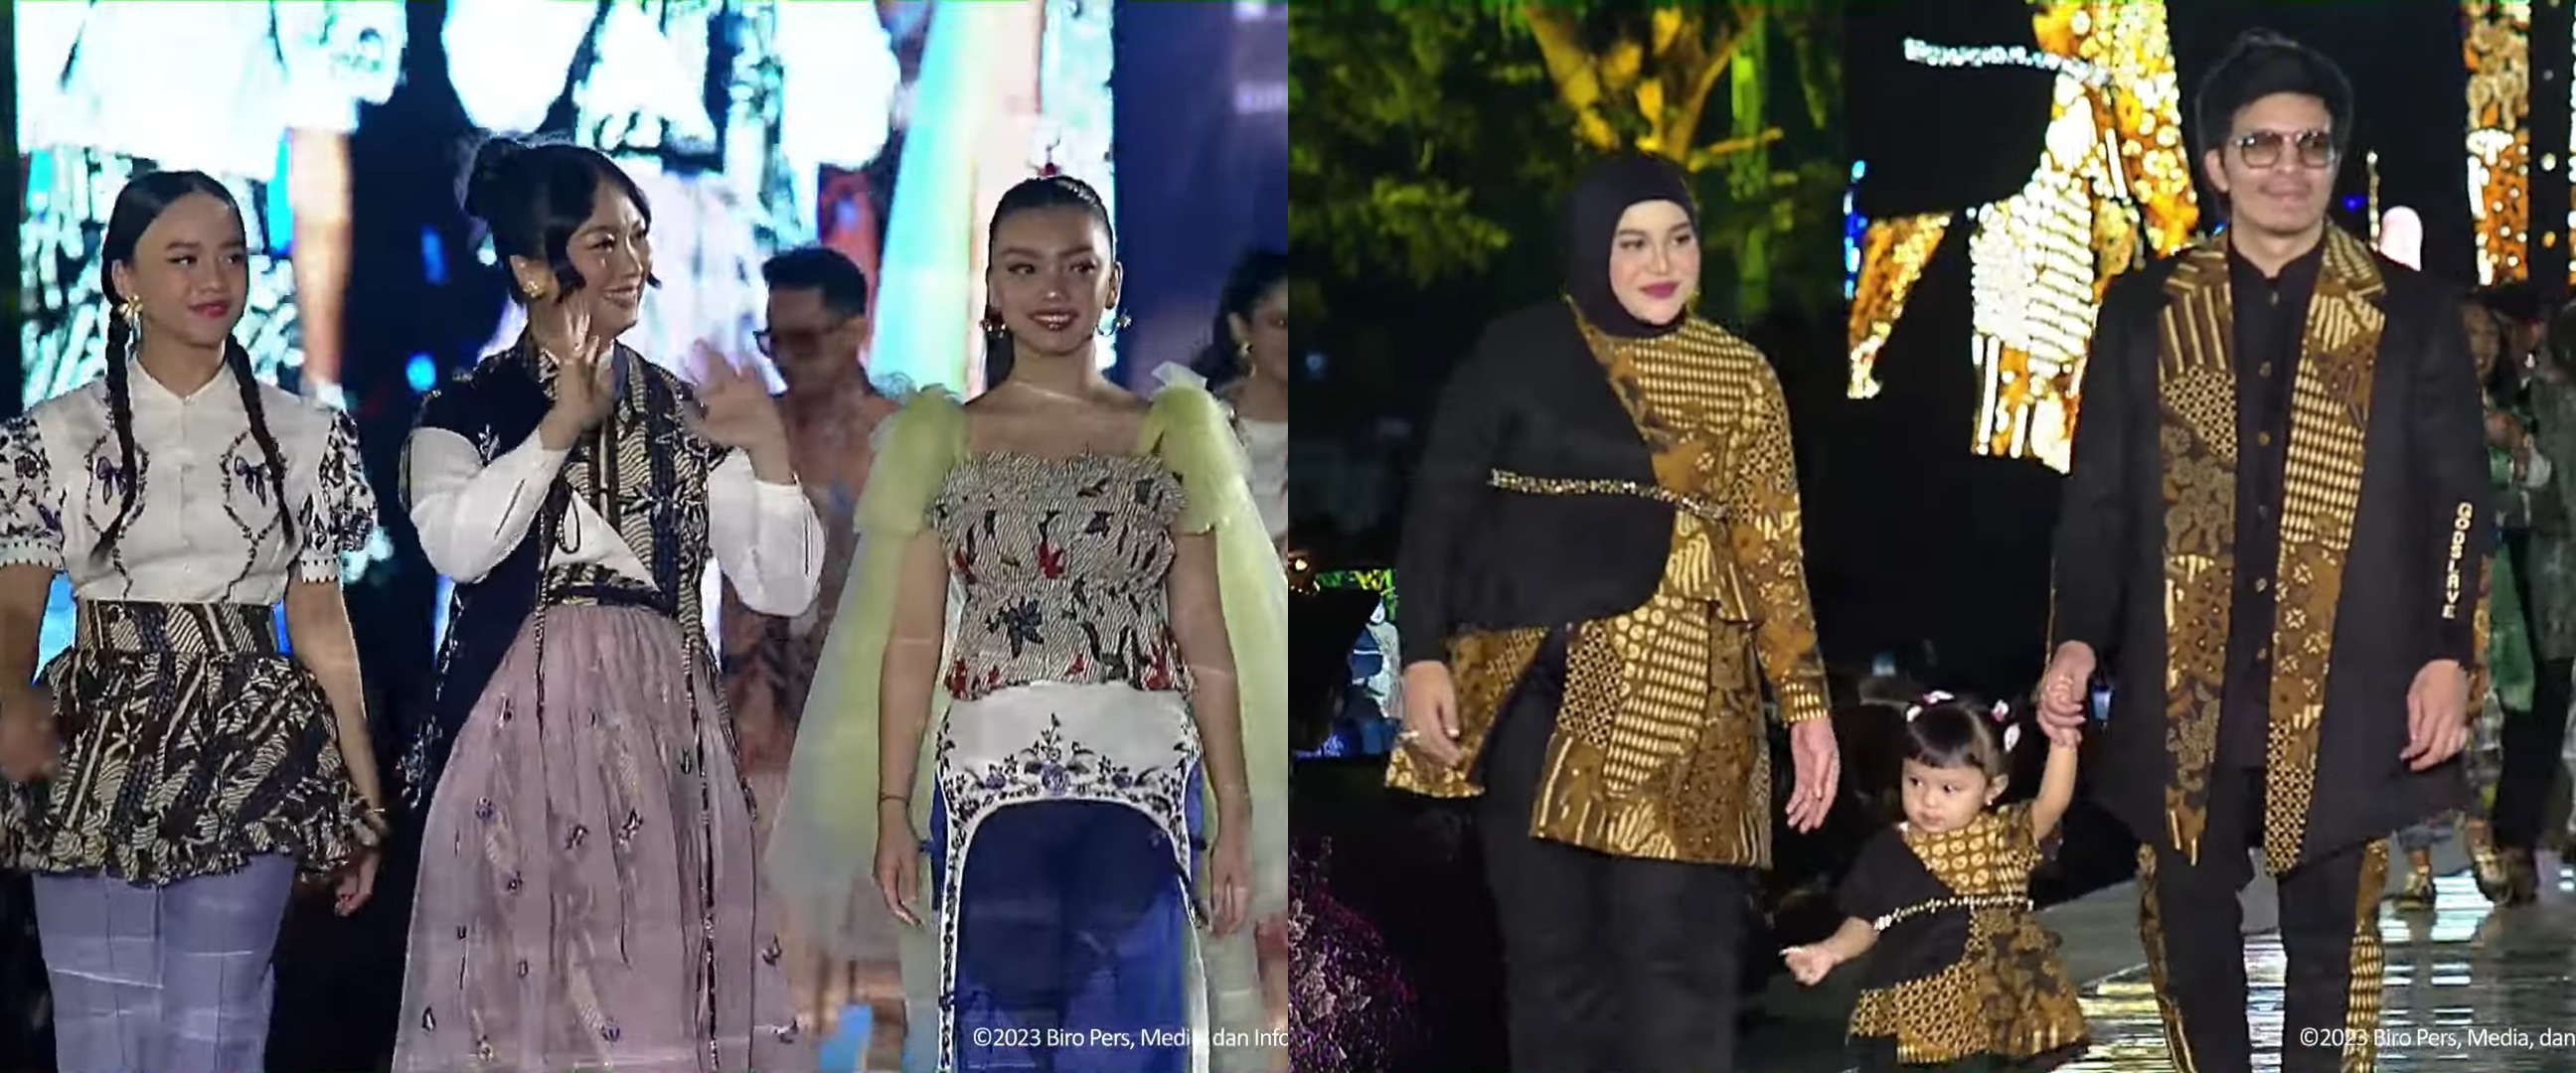 Momen 7 keluarga seleb kompak pakai batik di Istana Berbatik, gaya putra Maudy Koesnaedi bikin salfok